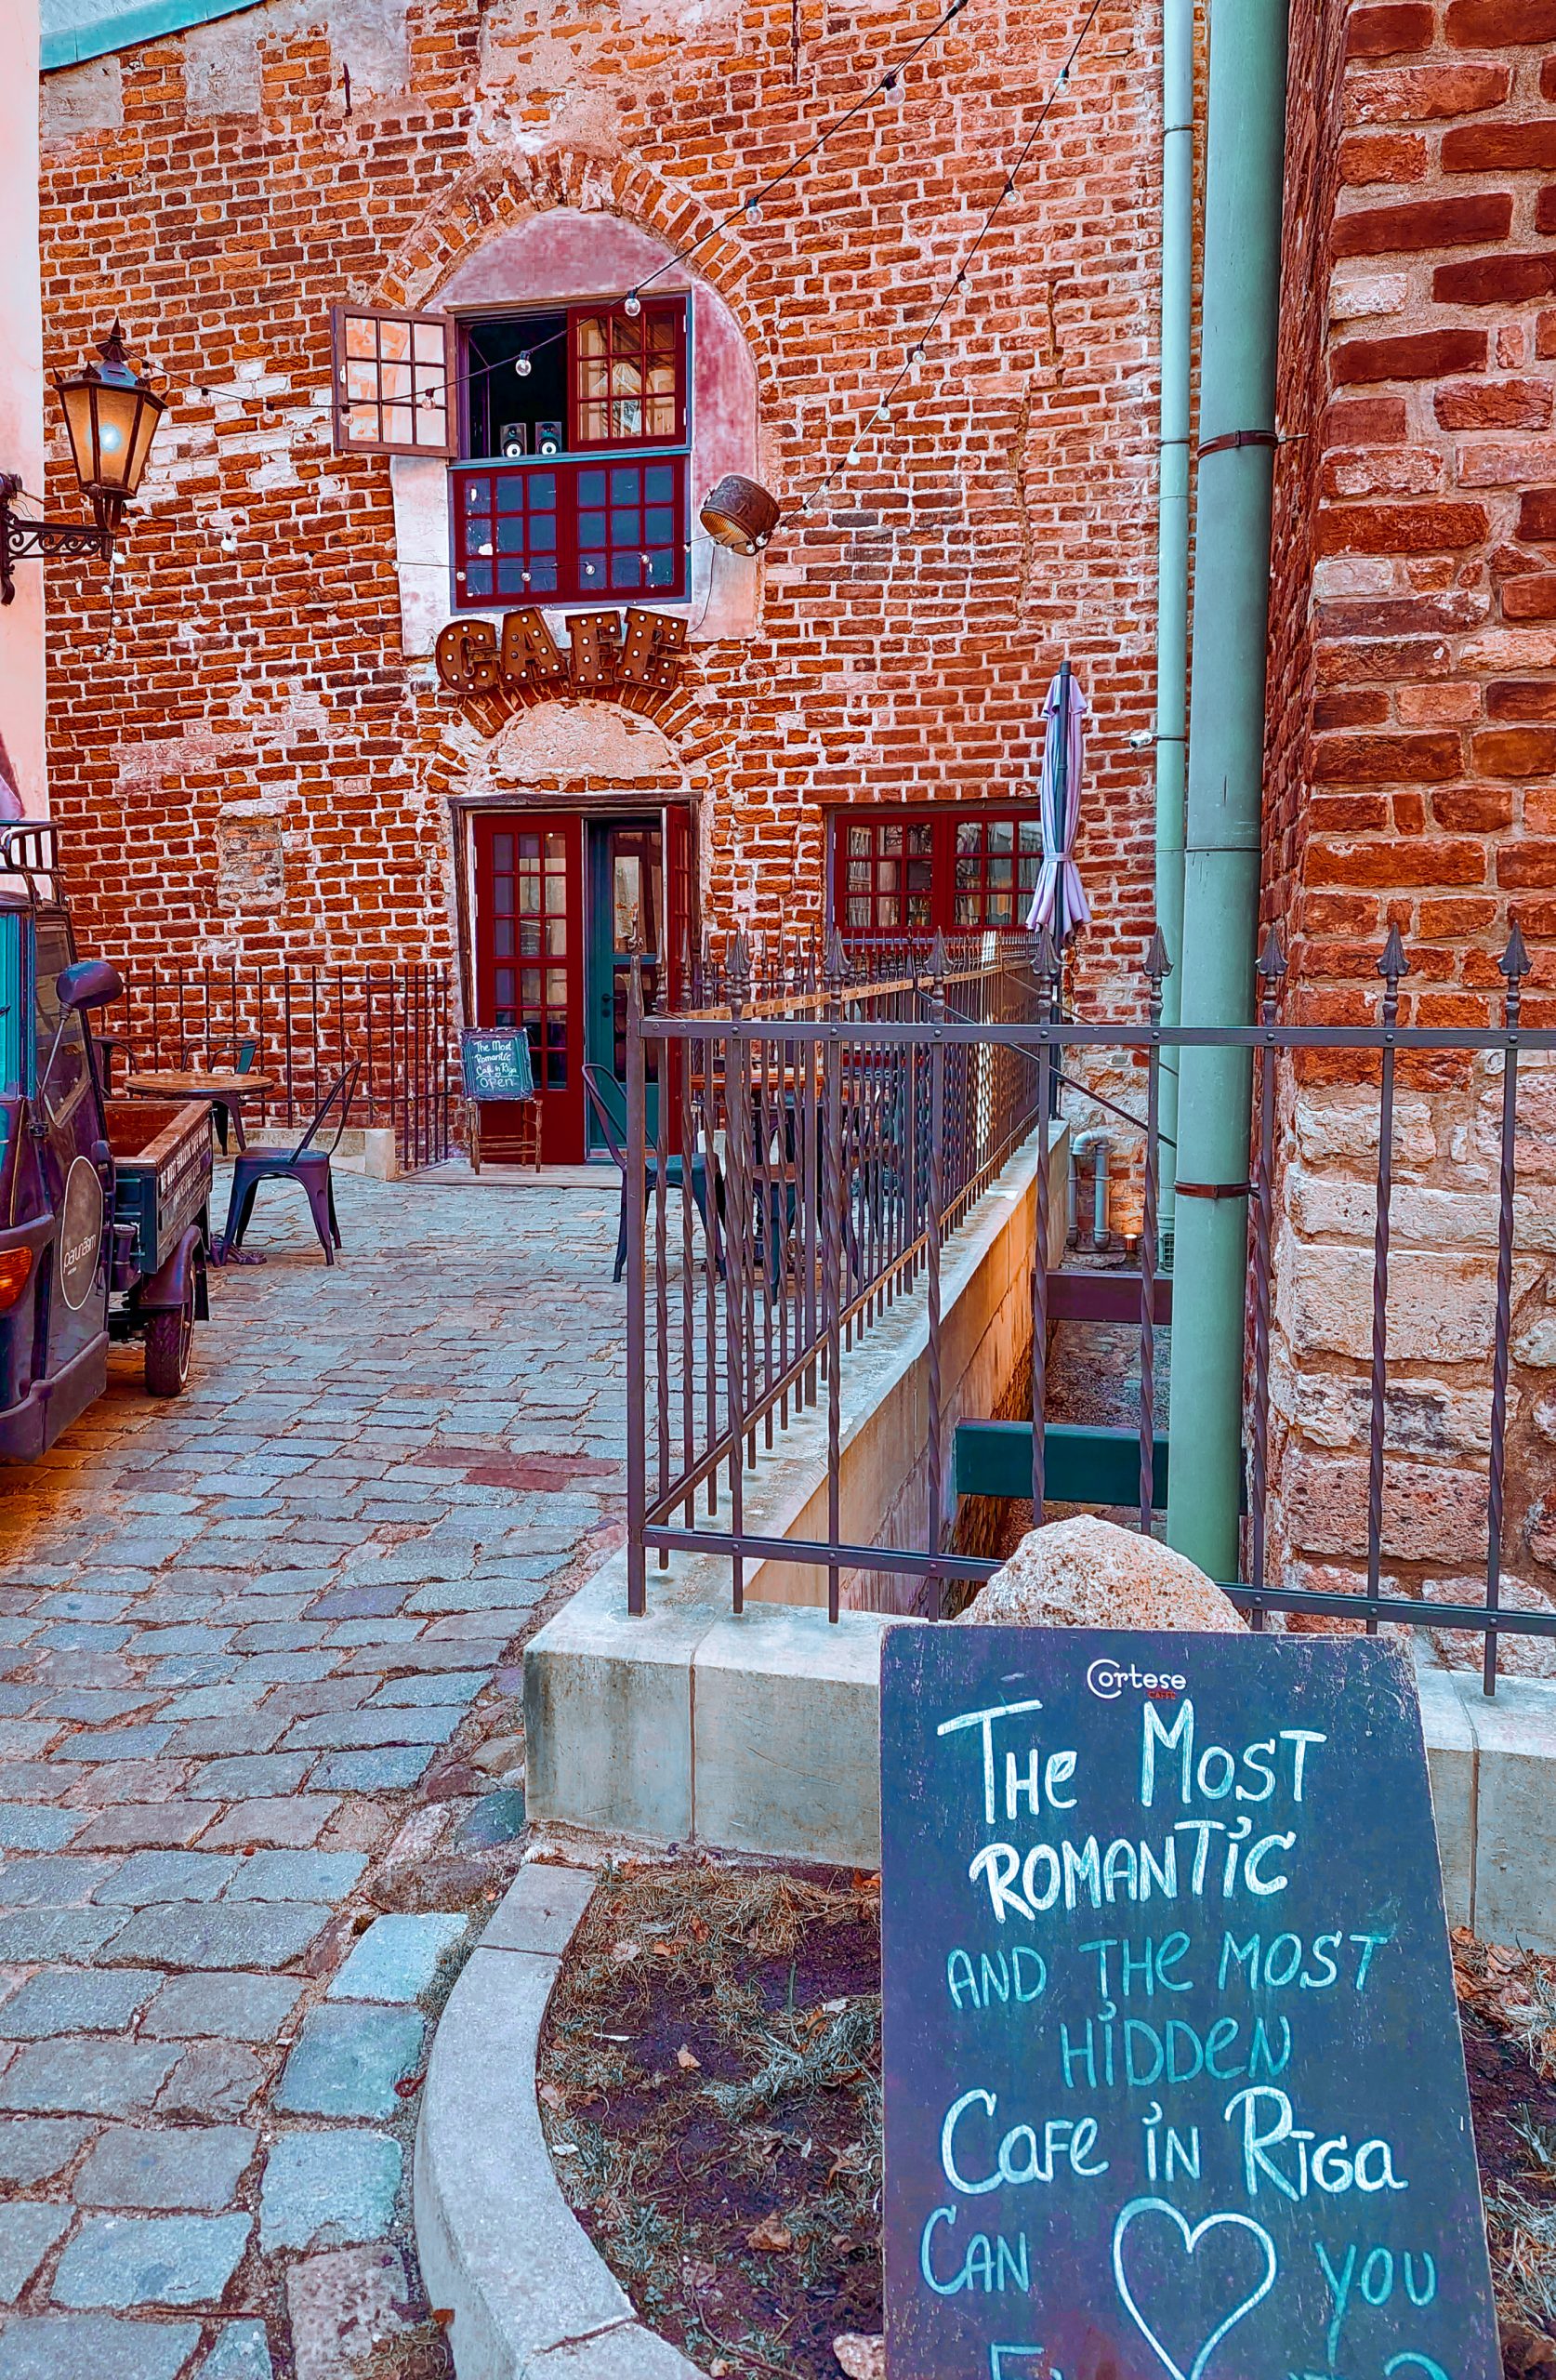 Riga in due giorni: il caffè più romantico